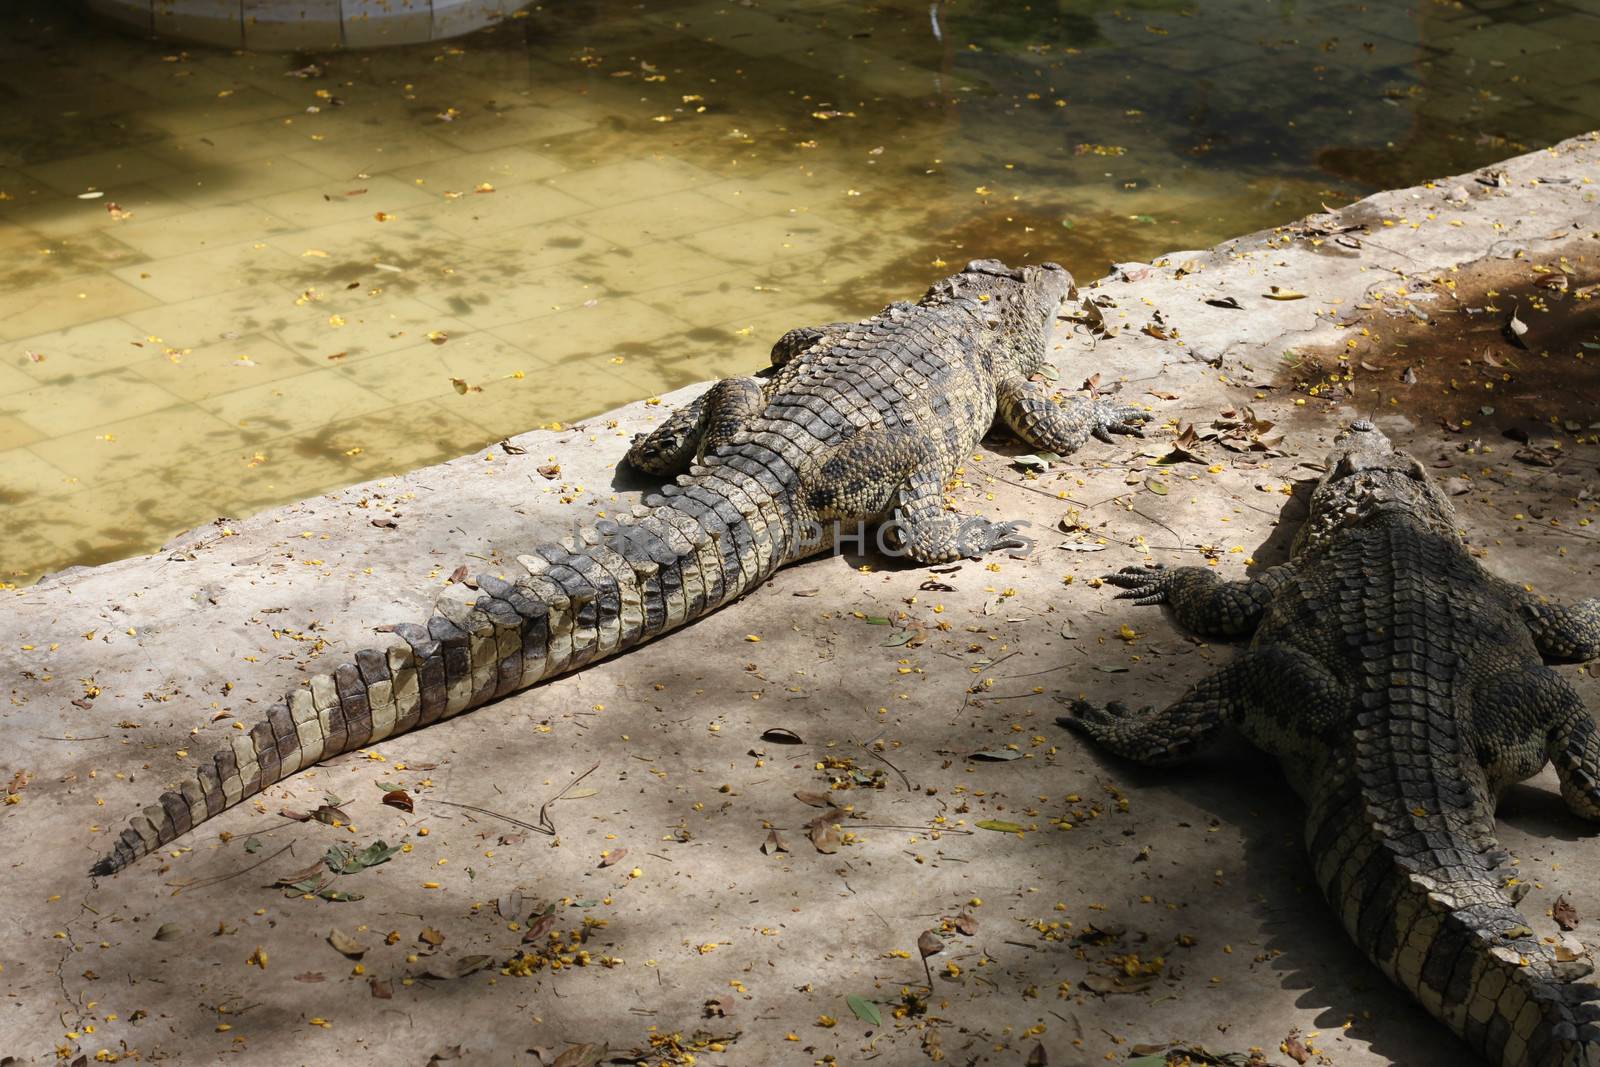 Alligator in pond at thailand